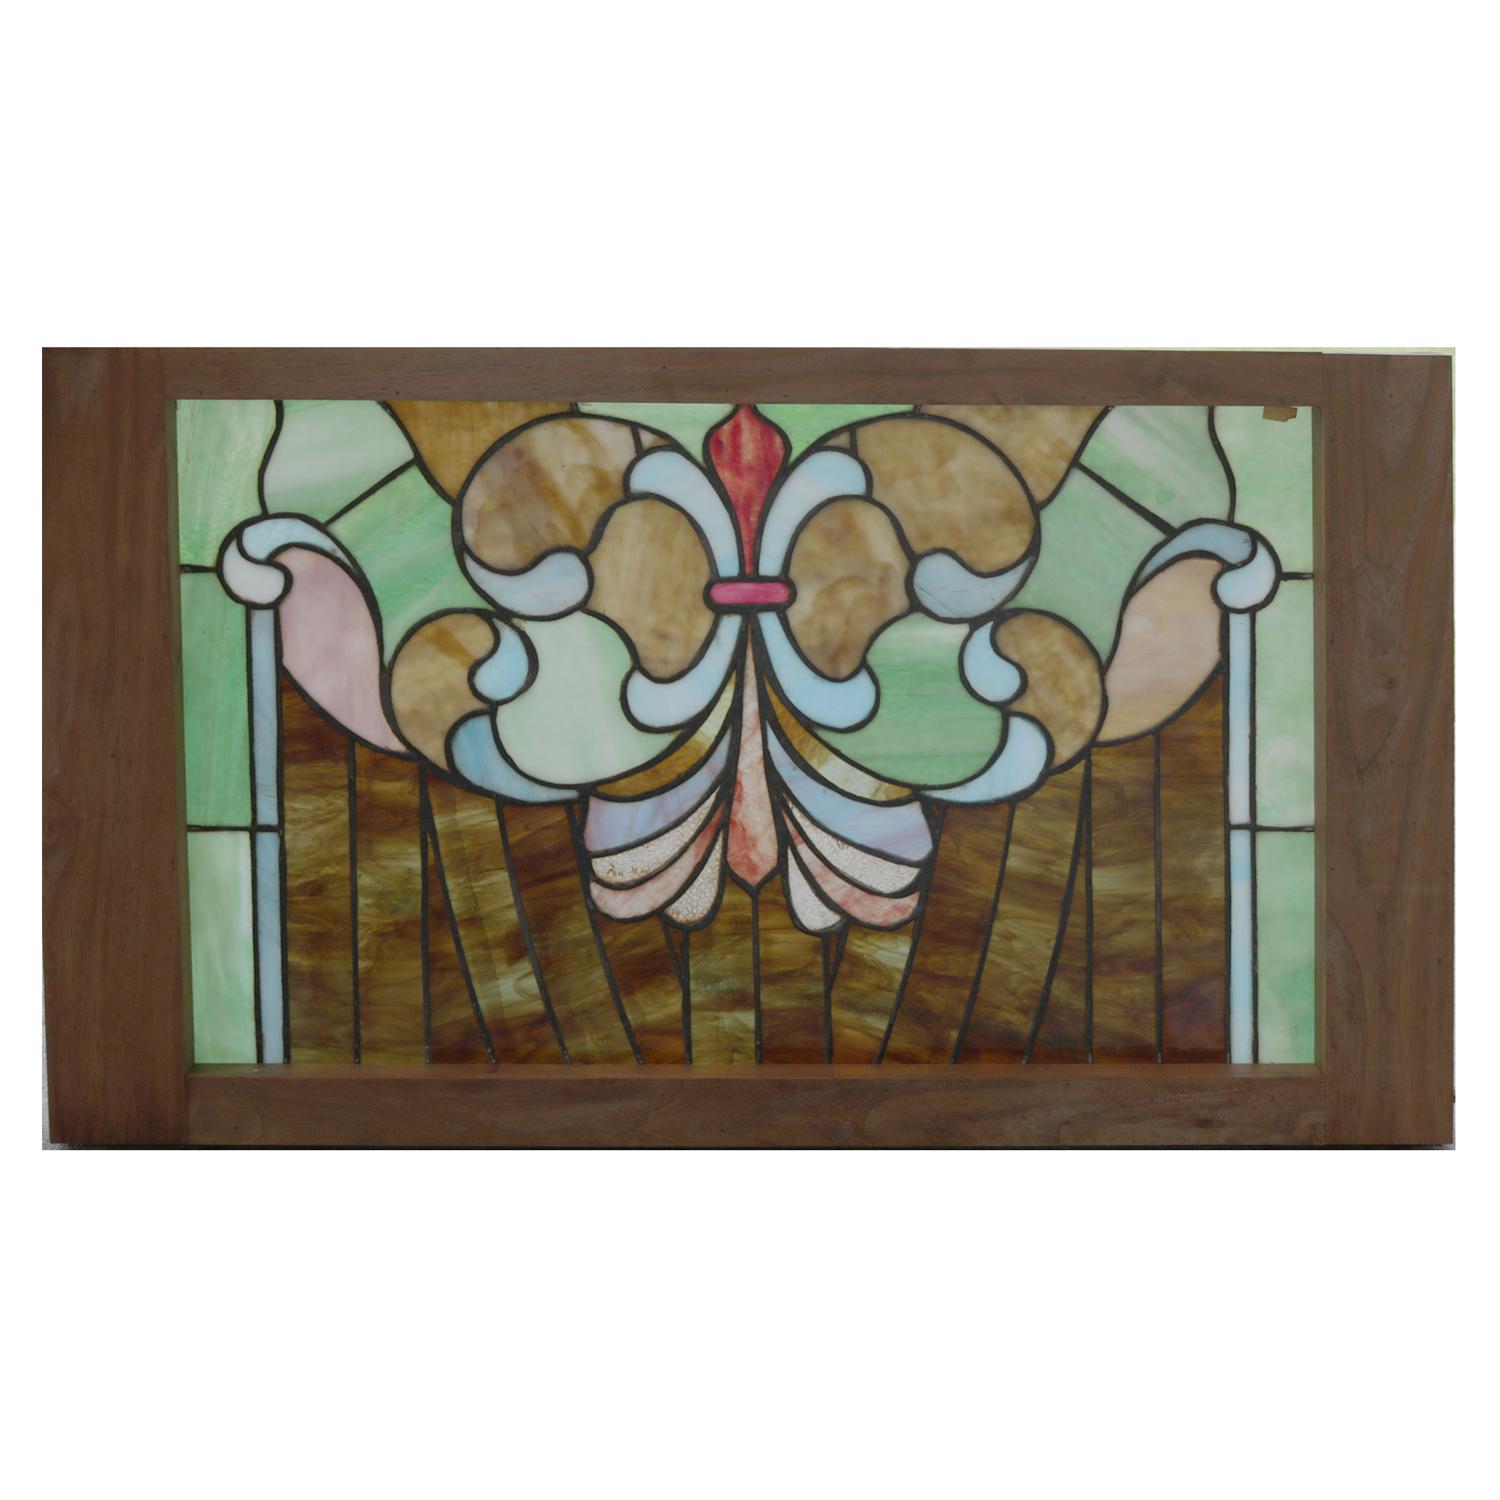 Antique Arts & Crafts Mosaic Leaded Glass Window, Stylized Fleur-de-Lis